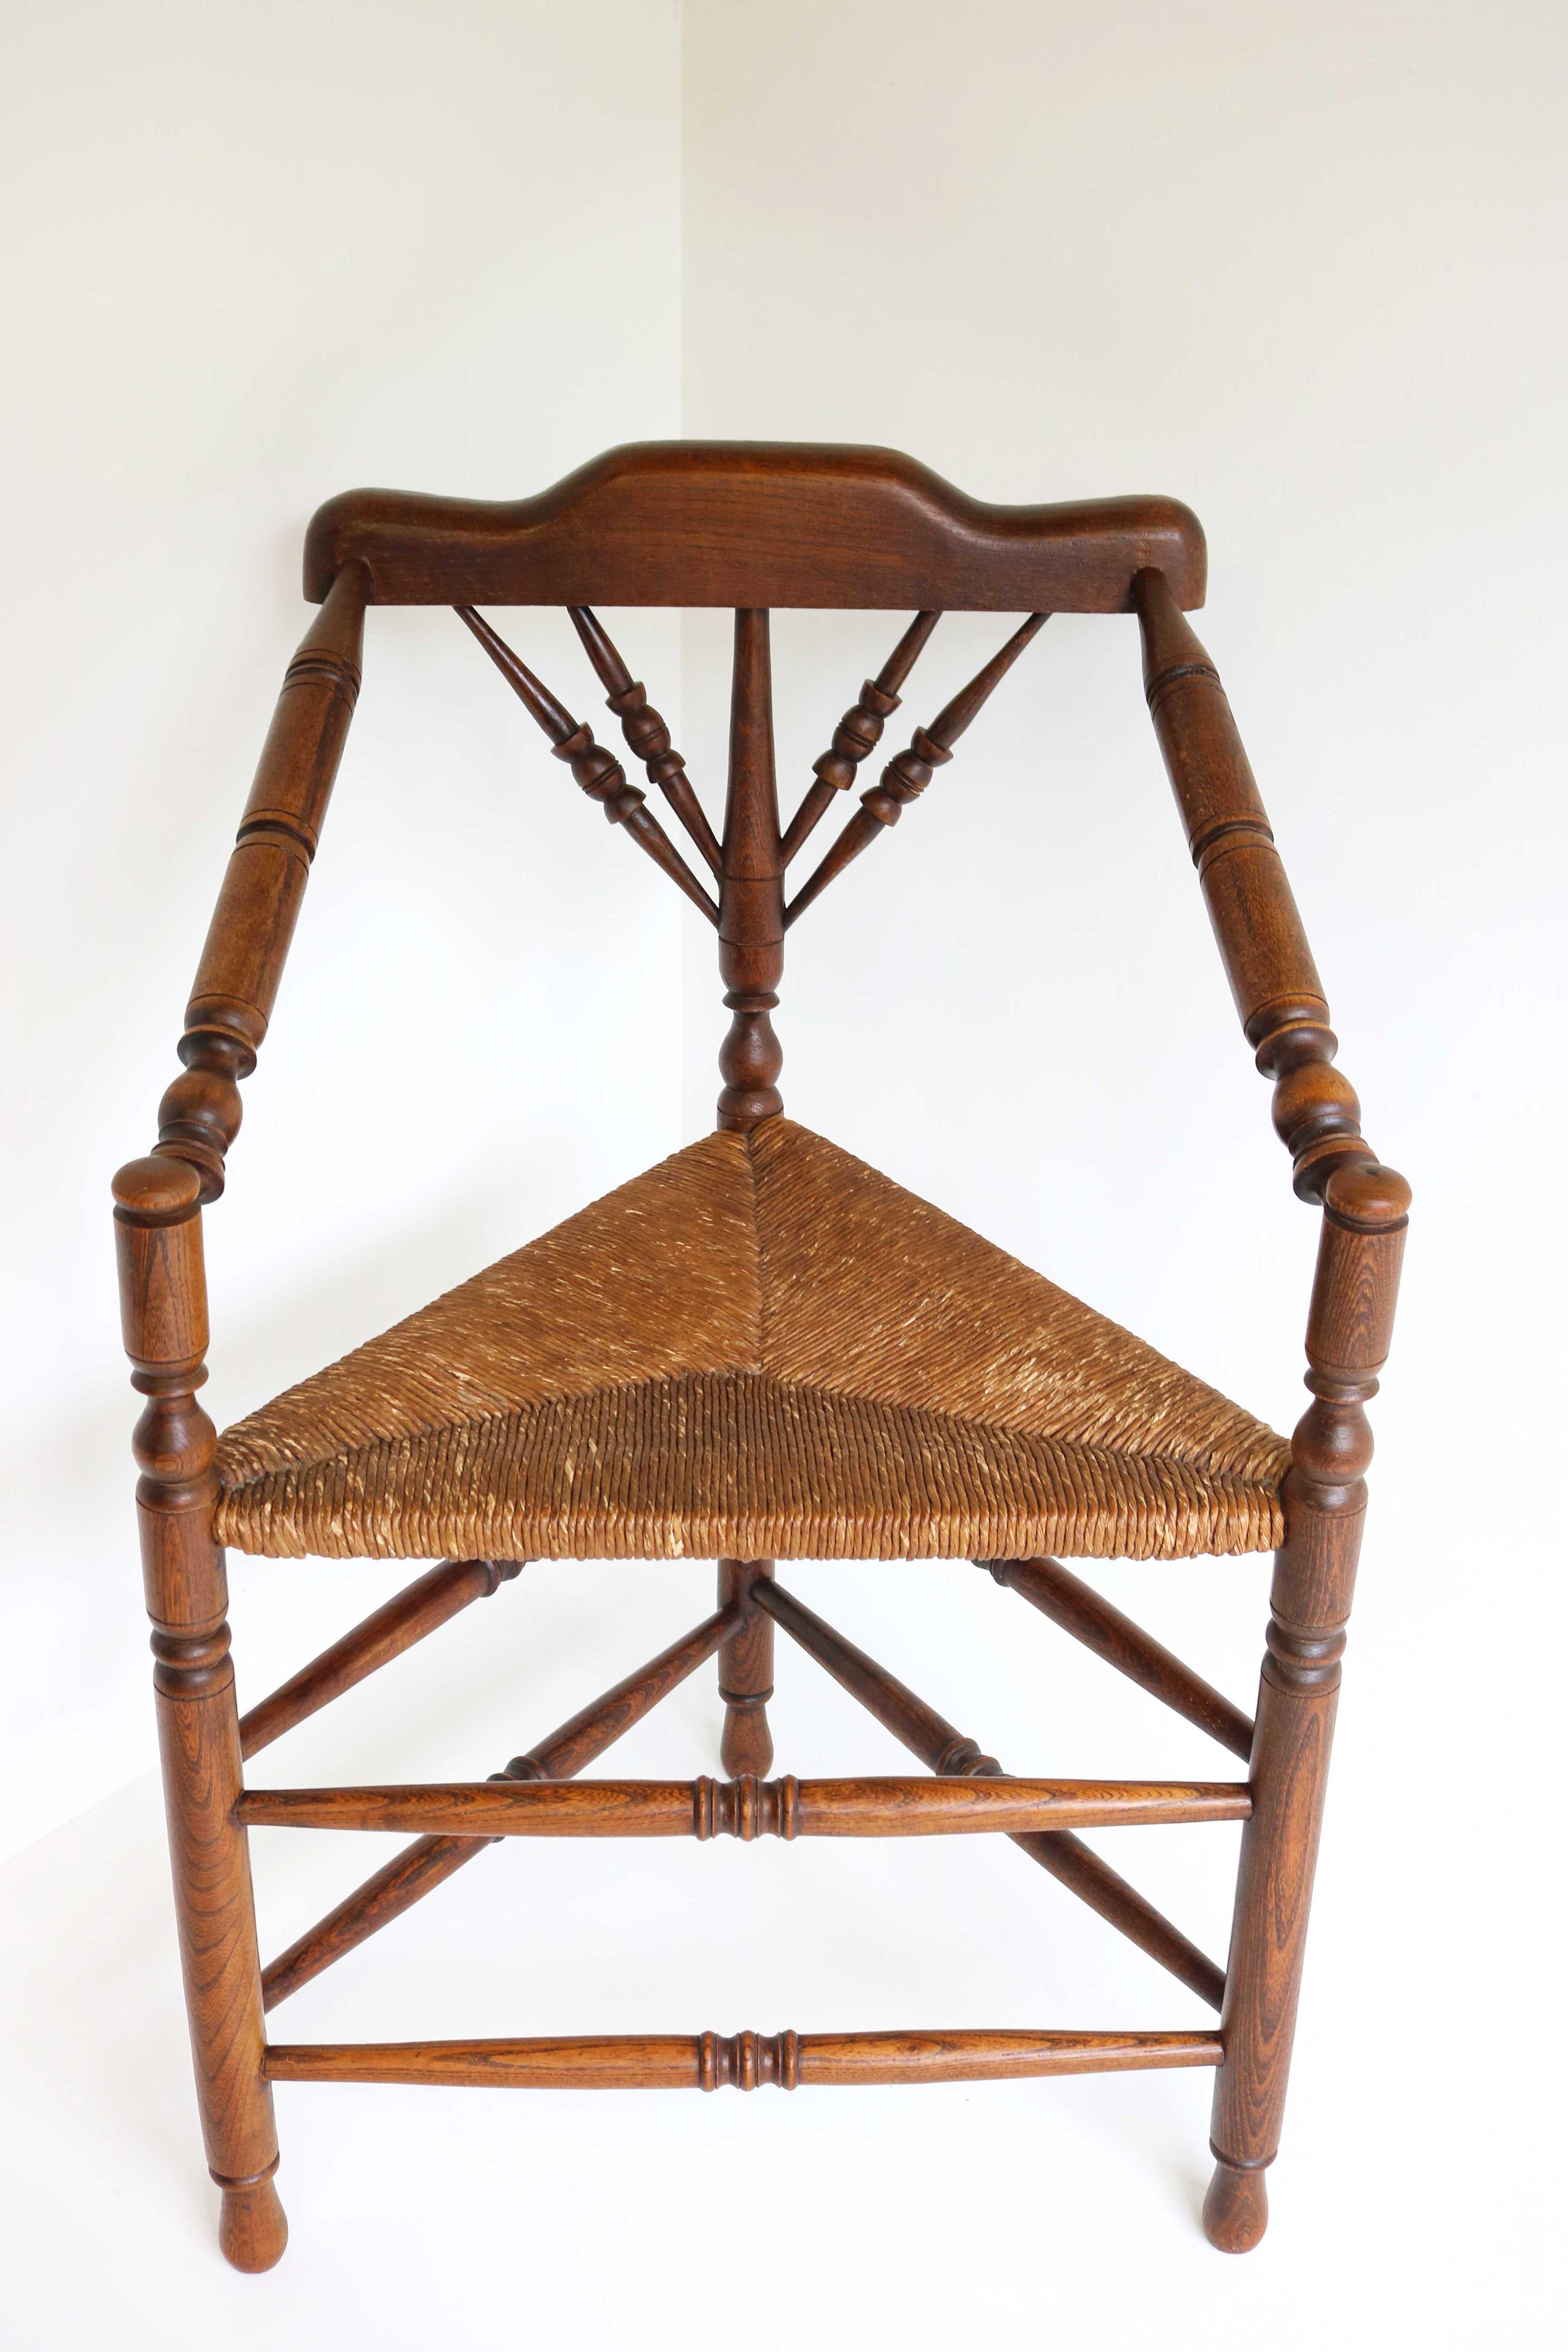 Fauteuil en bois de style édouardien de la fin du XIXe siècle avec assise en jonc, ca 1900
Fabriqué au Royaume-Uni.
Belle chaise à tricoter anglaise ancienne à trois pieds.
Cette vieille chaise robuste aux pieds tournés s'appelle une chaise à